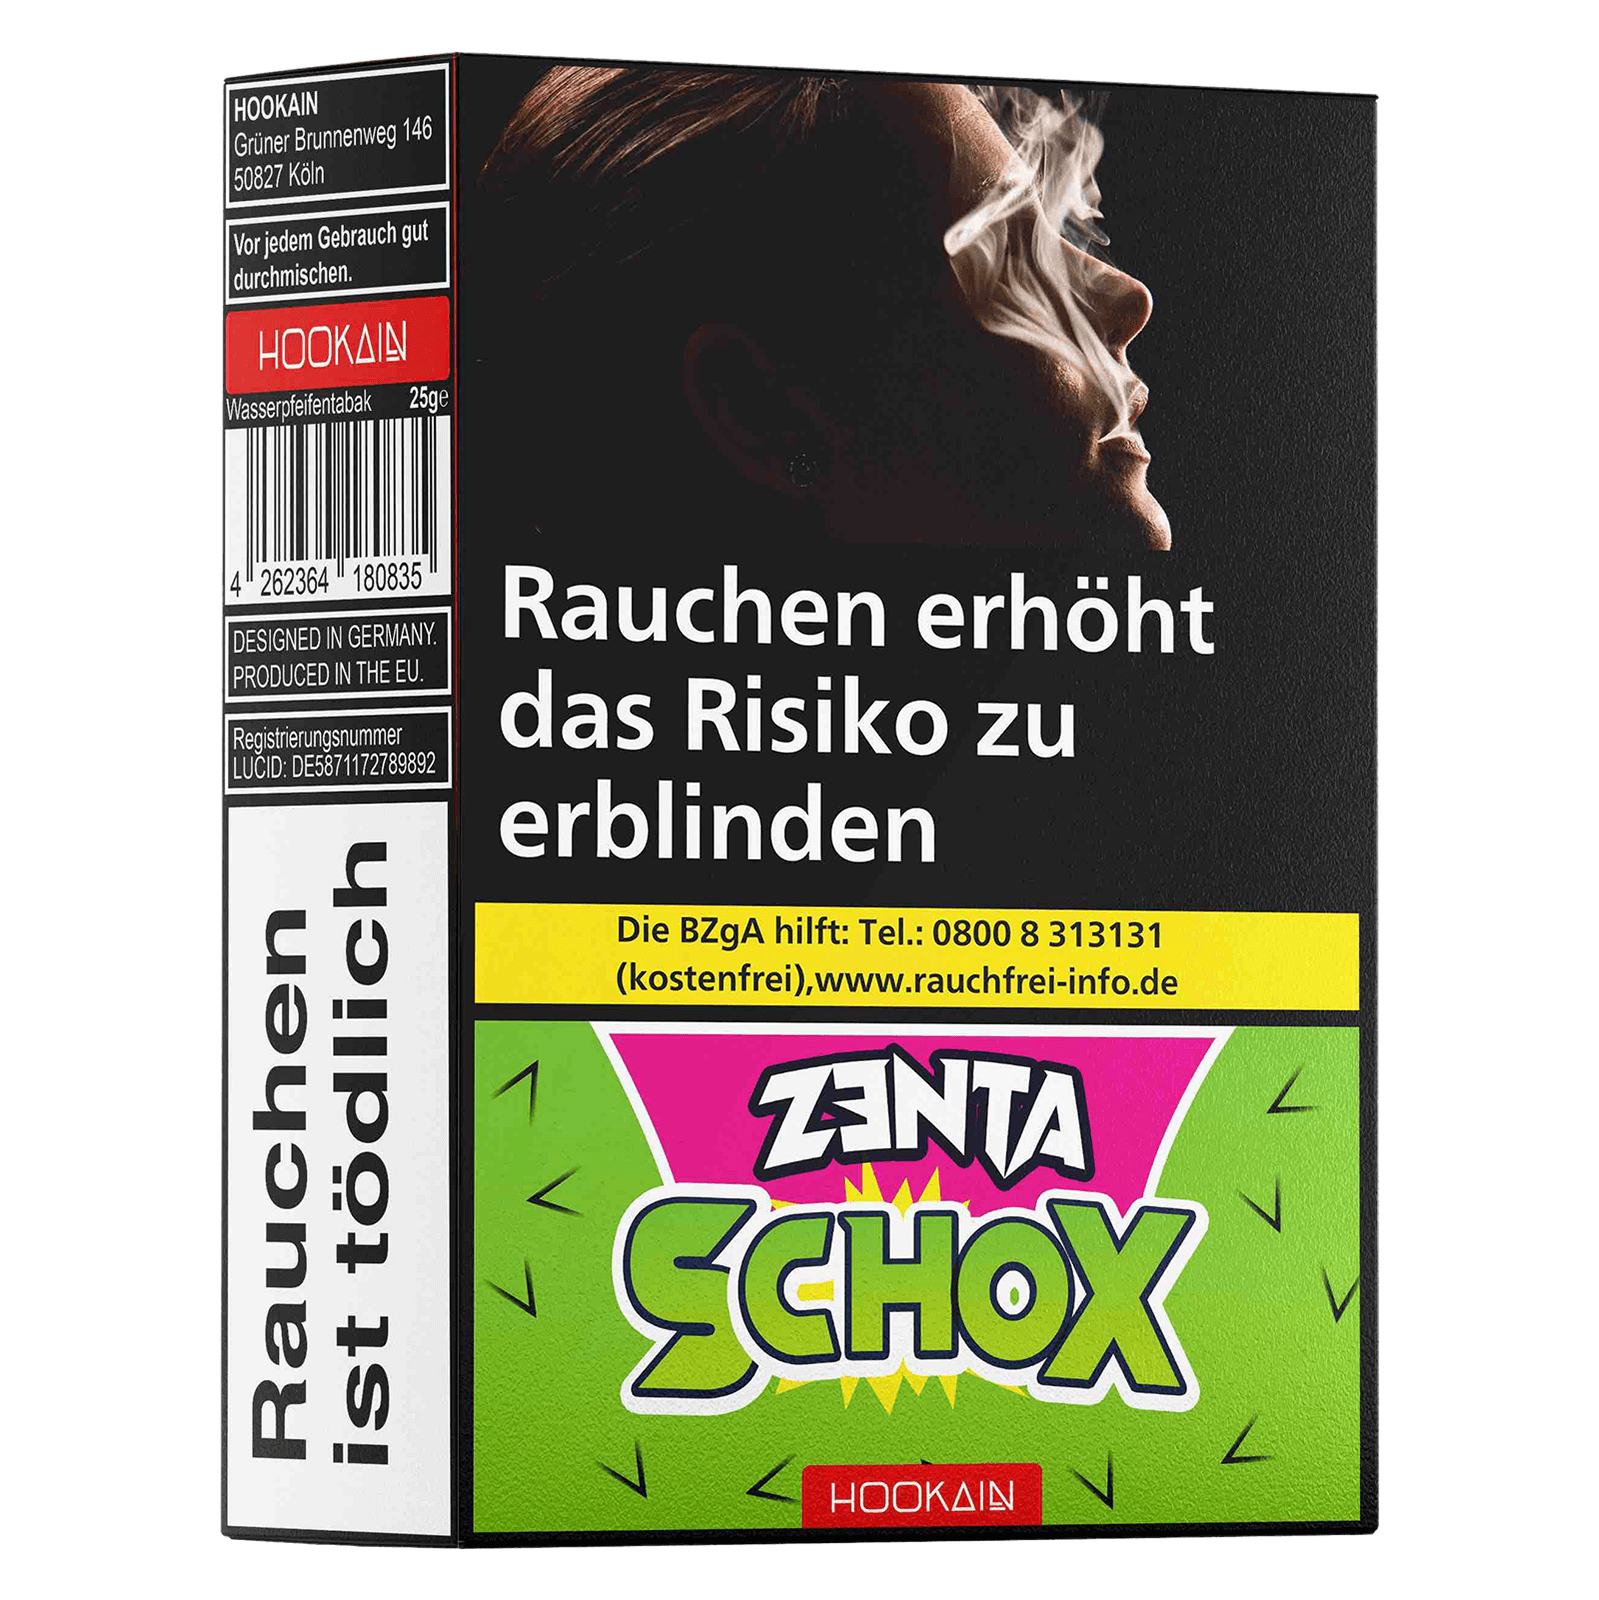 Hookain 25g - Zenta Schox